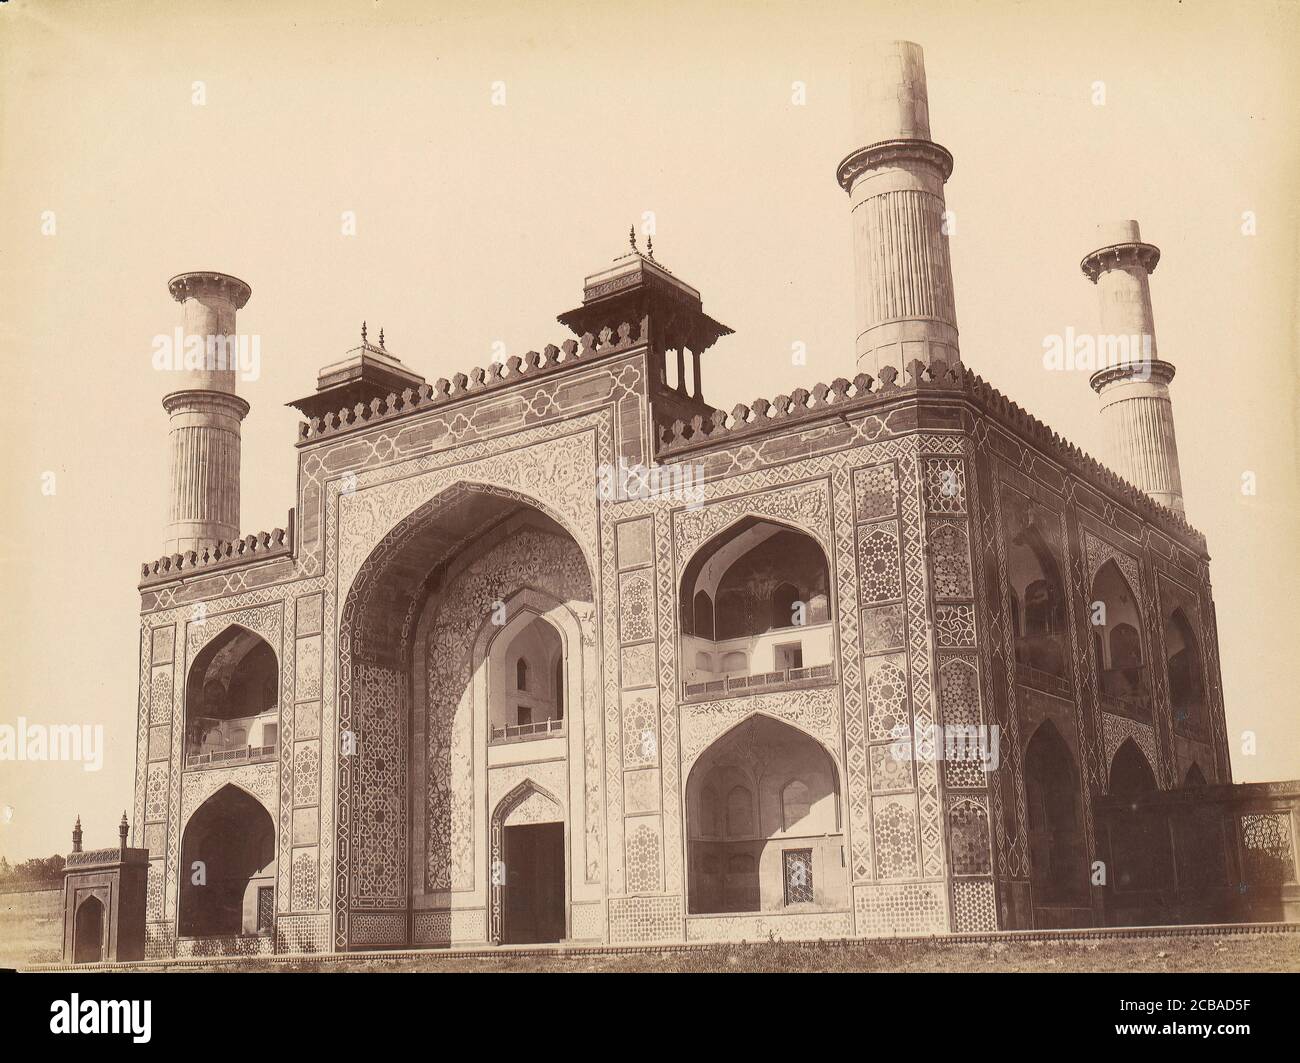 Akbar's Tomb at Sikandra, India, 1860s-70s. Stock Photo